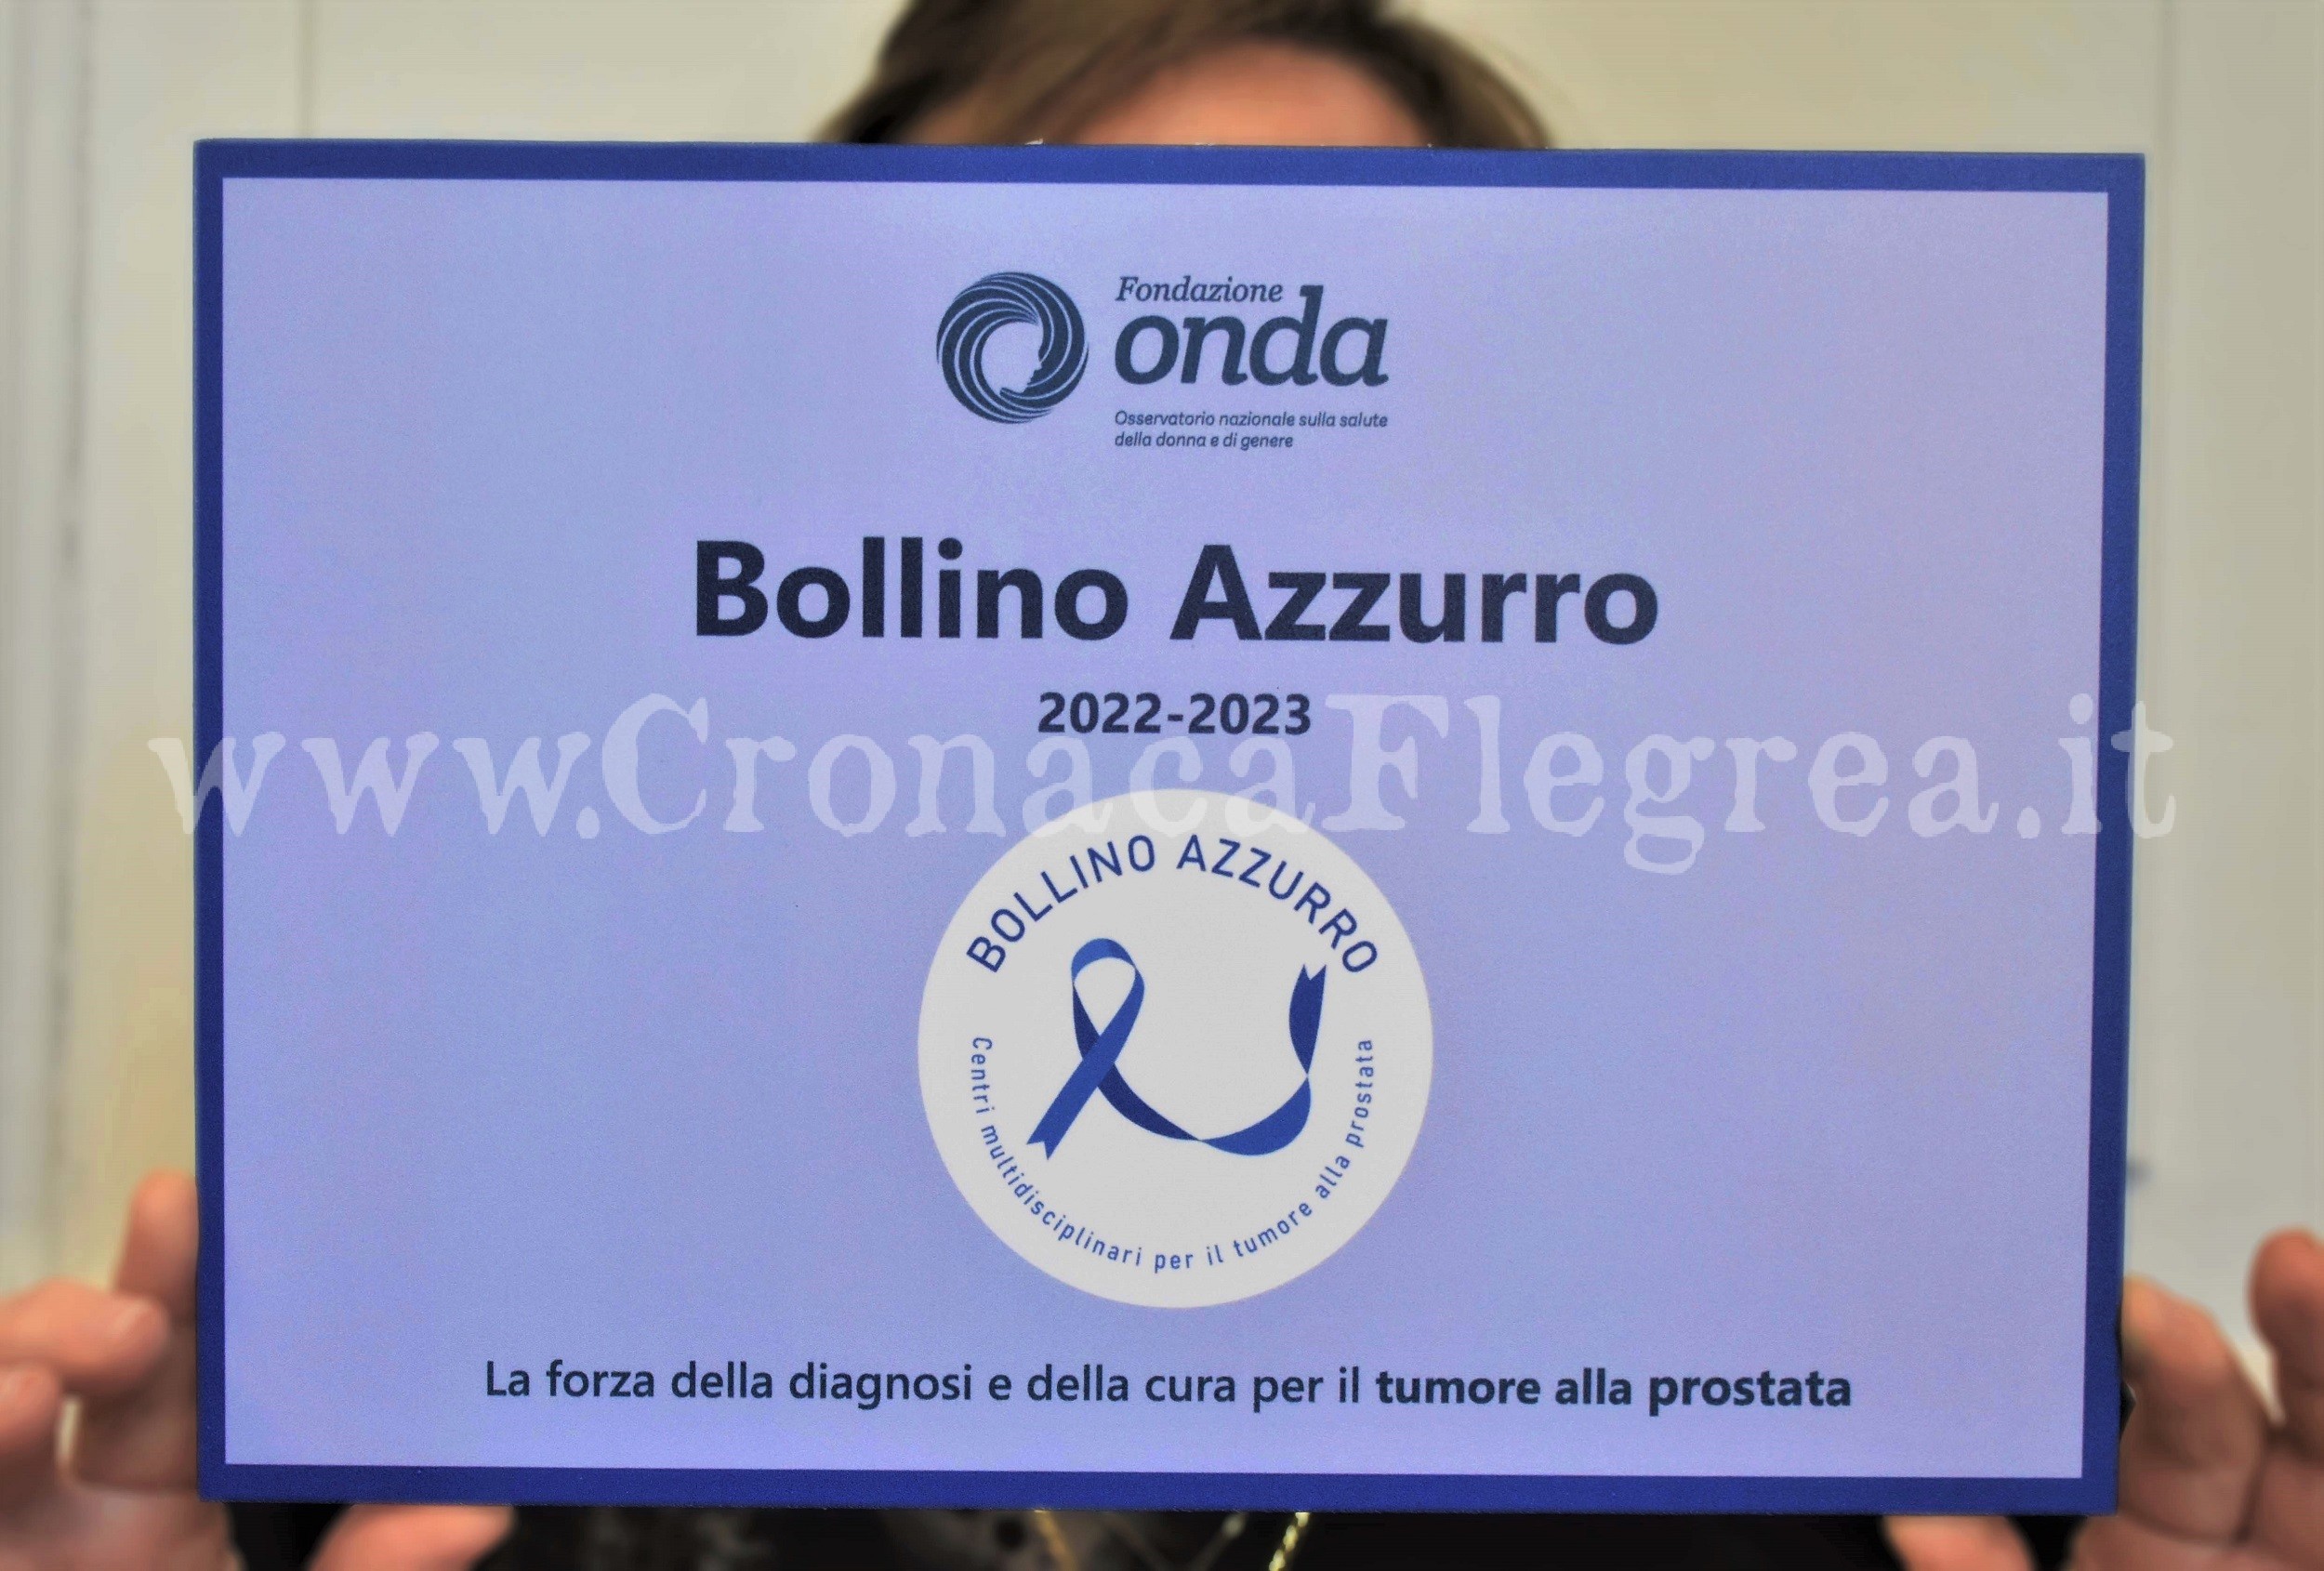 L’ospedale di Pozzuoli è un’eccellenza: riconosciuto il “bollino azzurro” per il trattamento del tumore alla prostata​